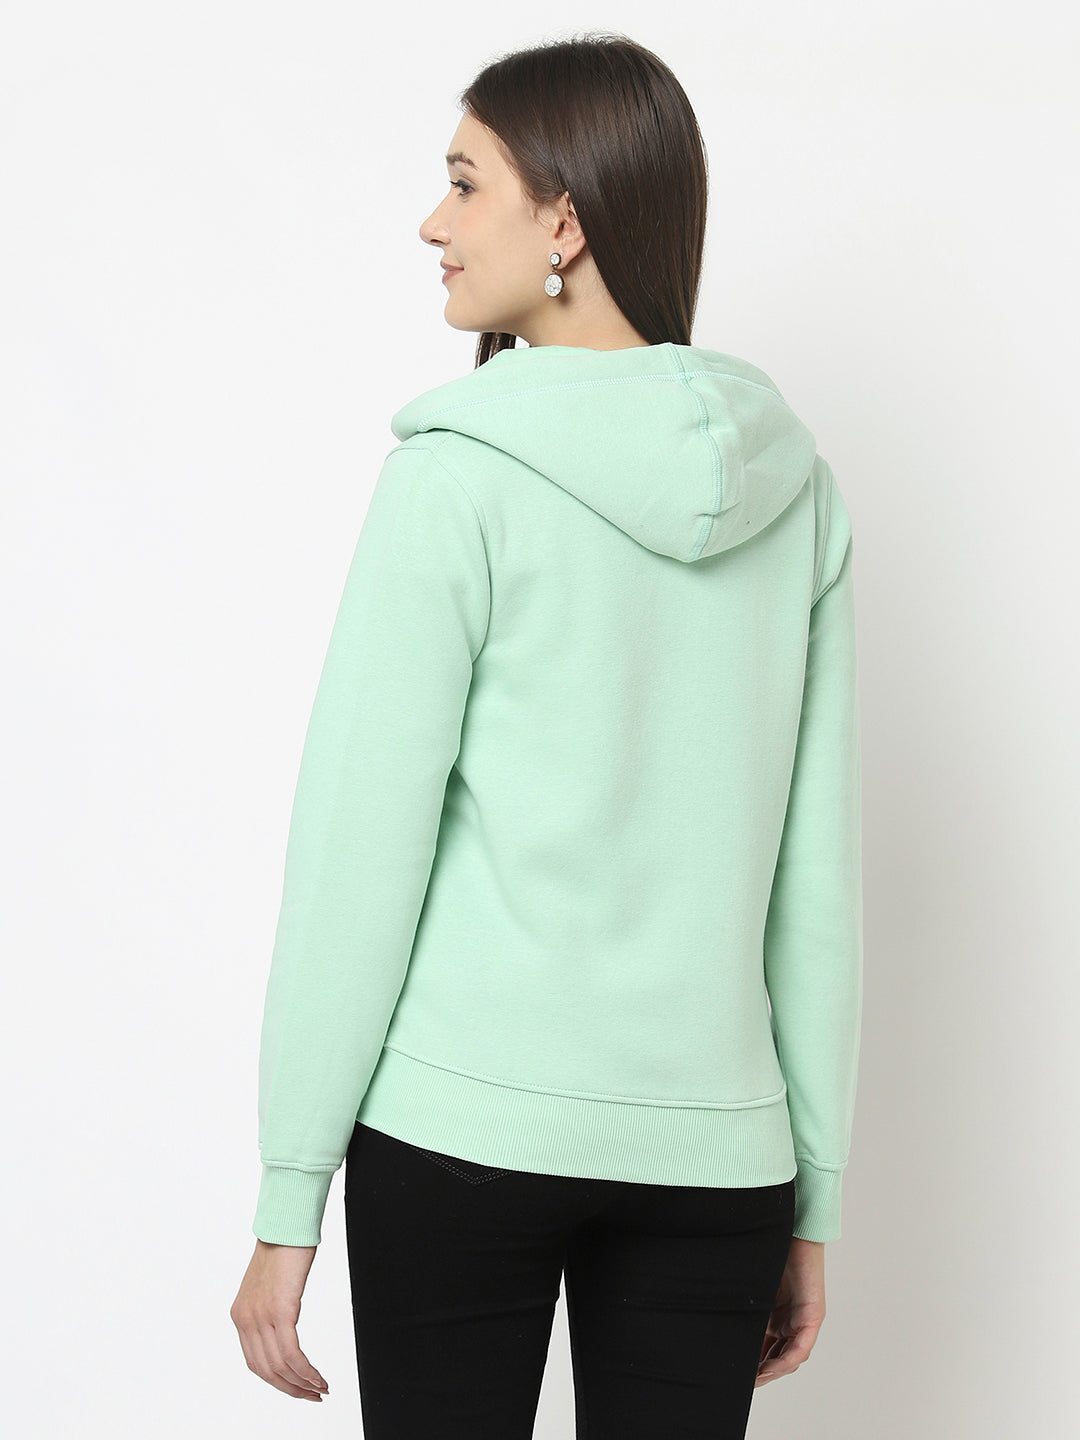 Mint Green Open-Front Sweatshirt with Zip Closure